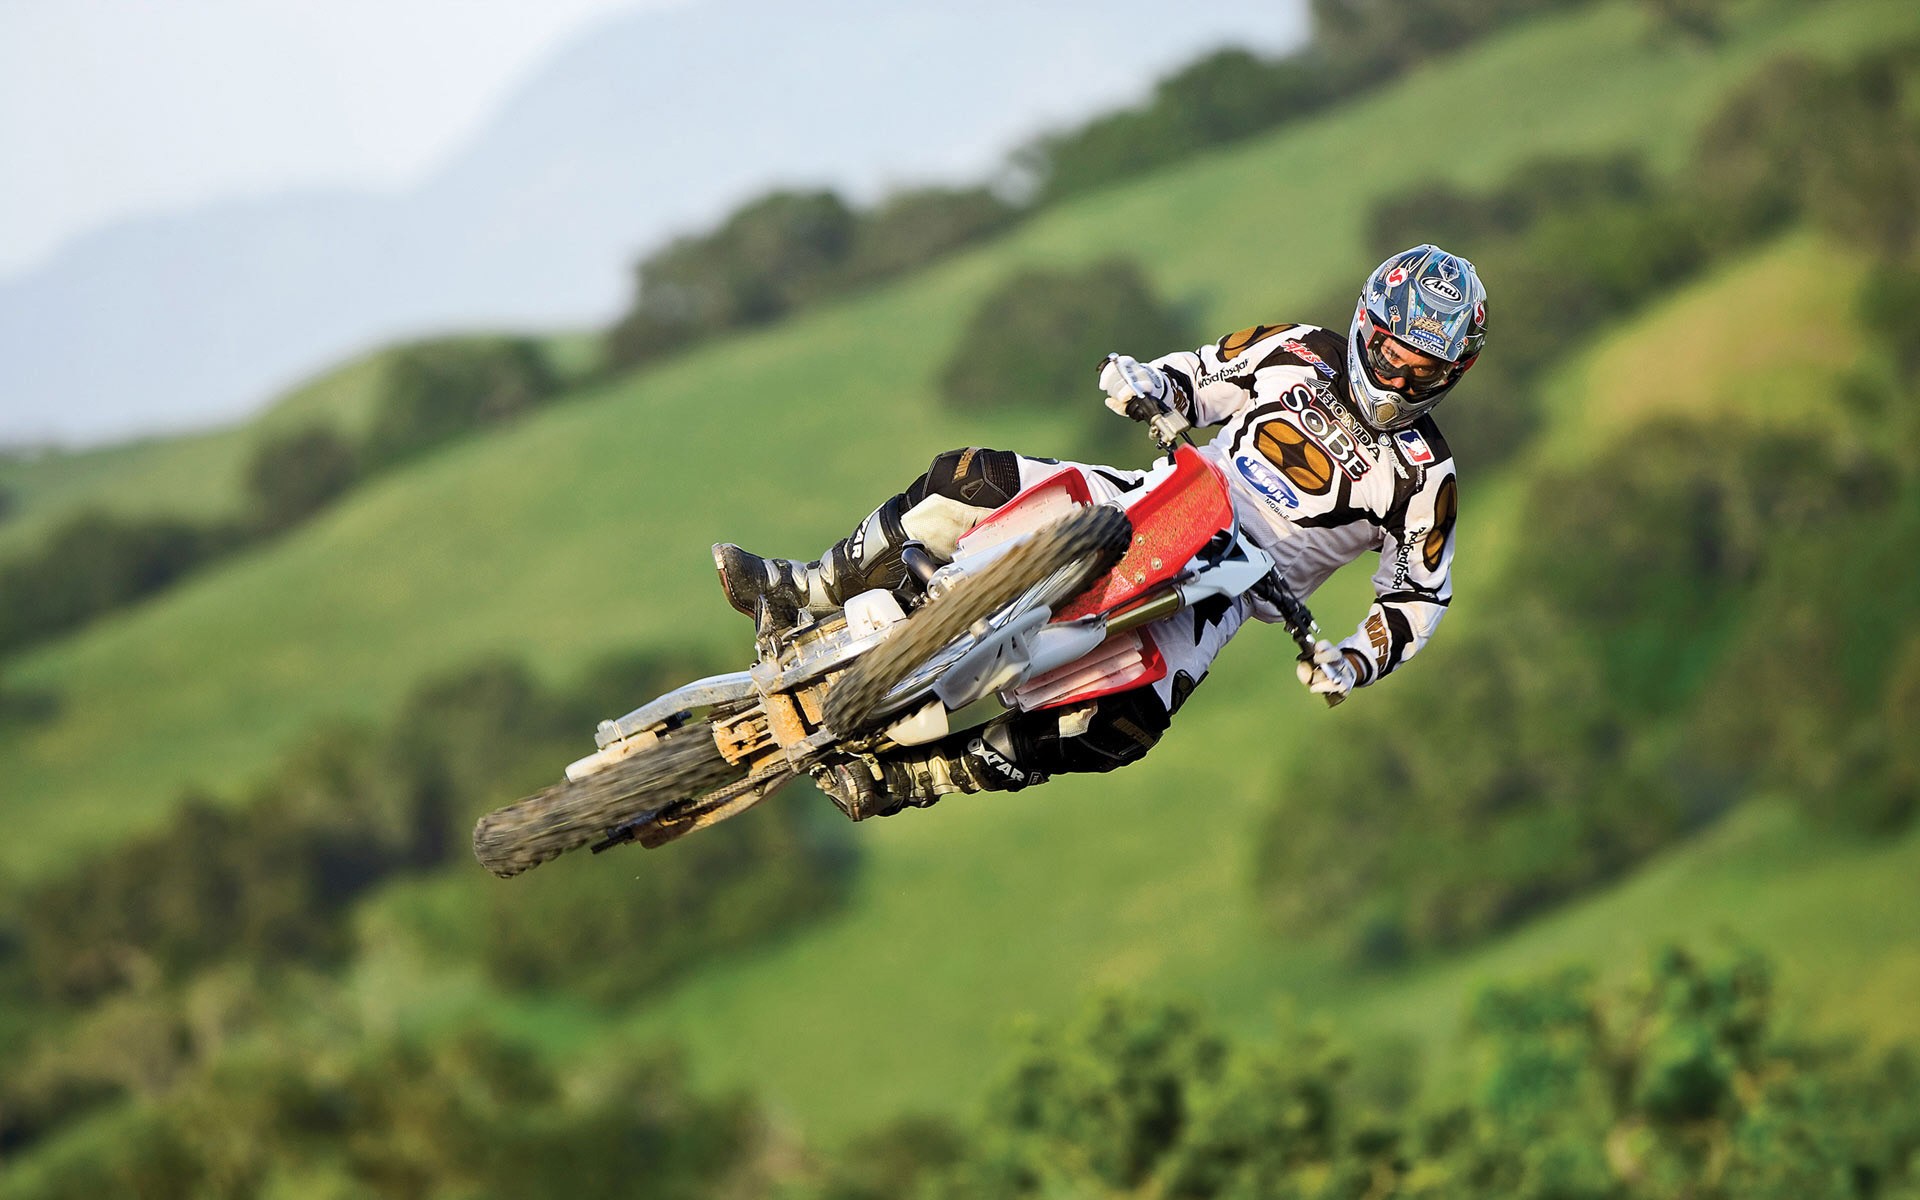 jumping, bikes, motorbikes, motorcycles - desktop wallpaper